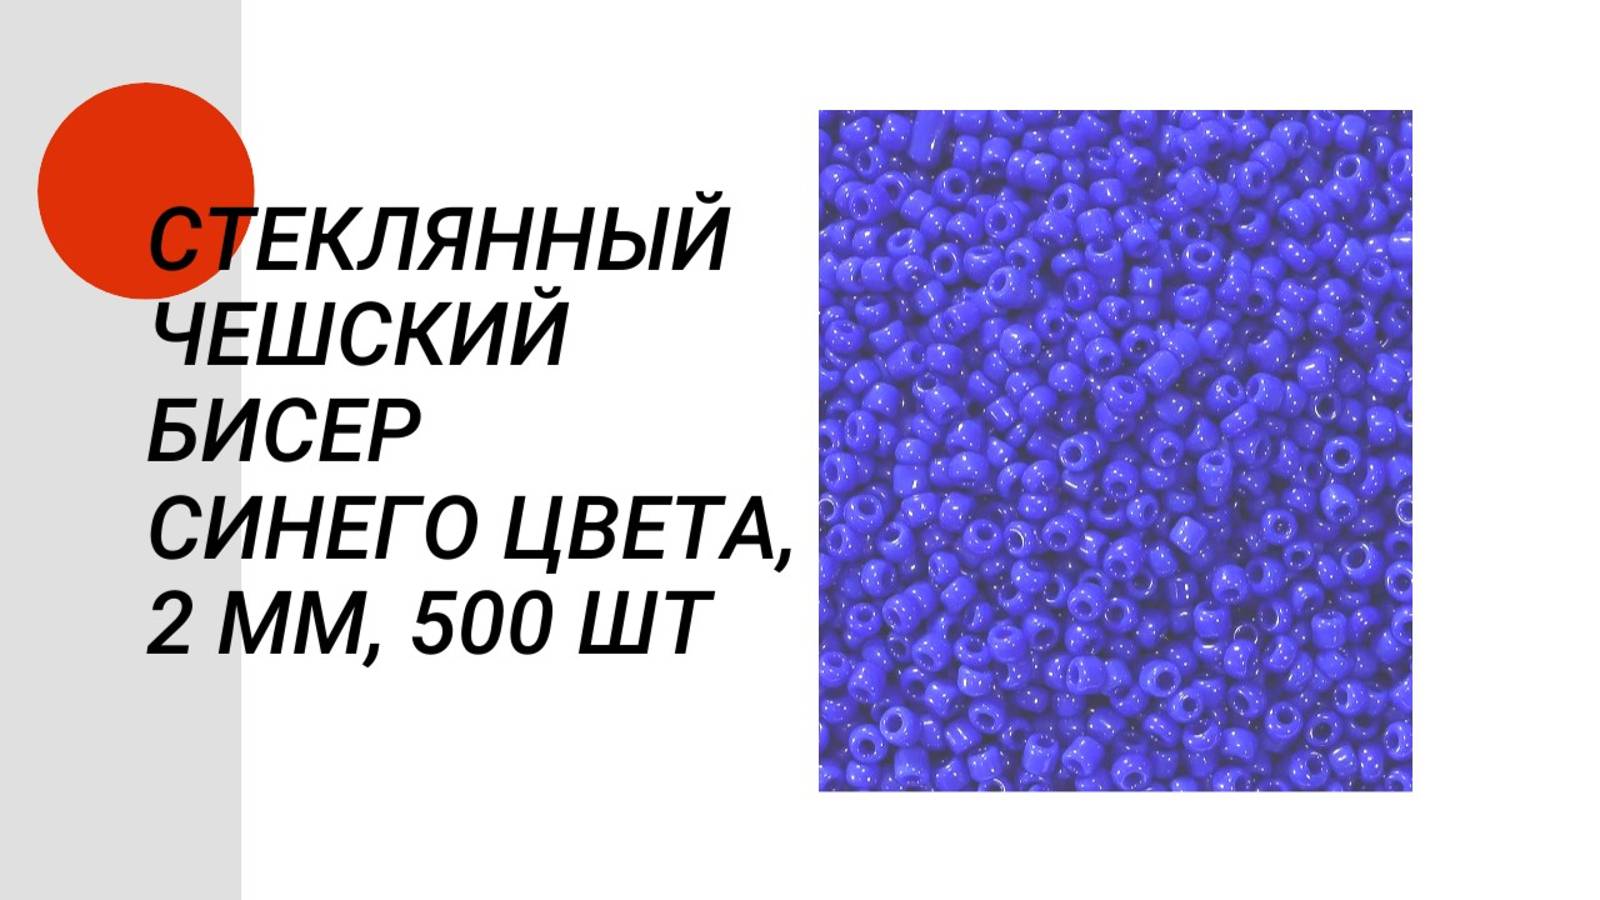 Стеклянный чешский бисер синего цвета, 2 мм, 500 штук